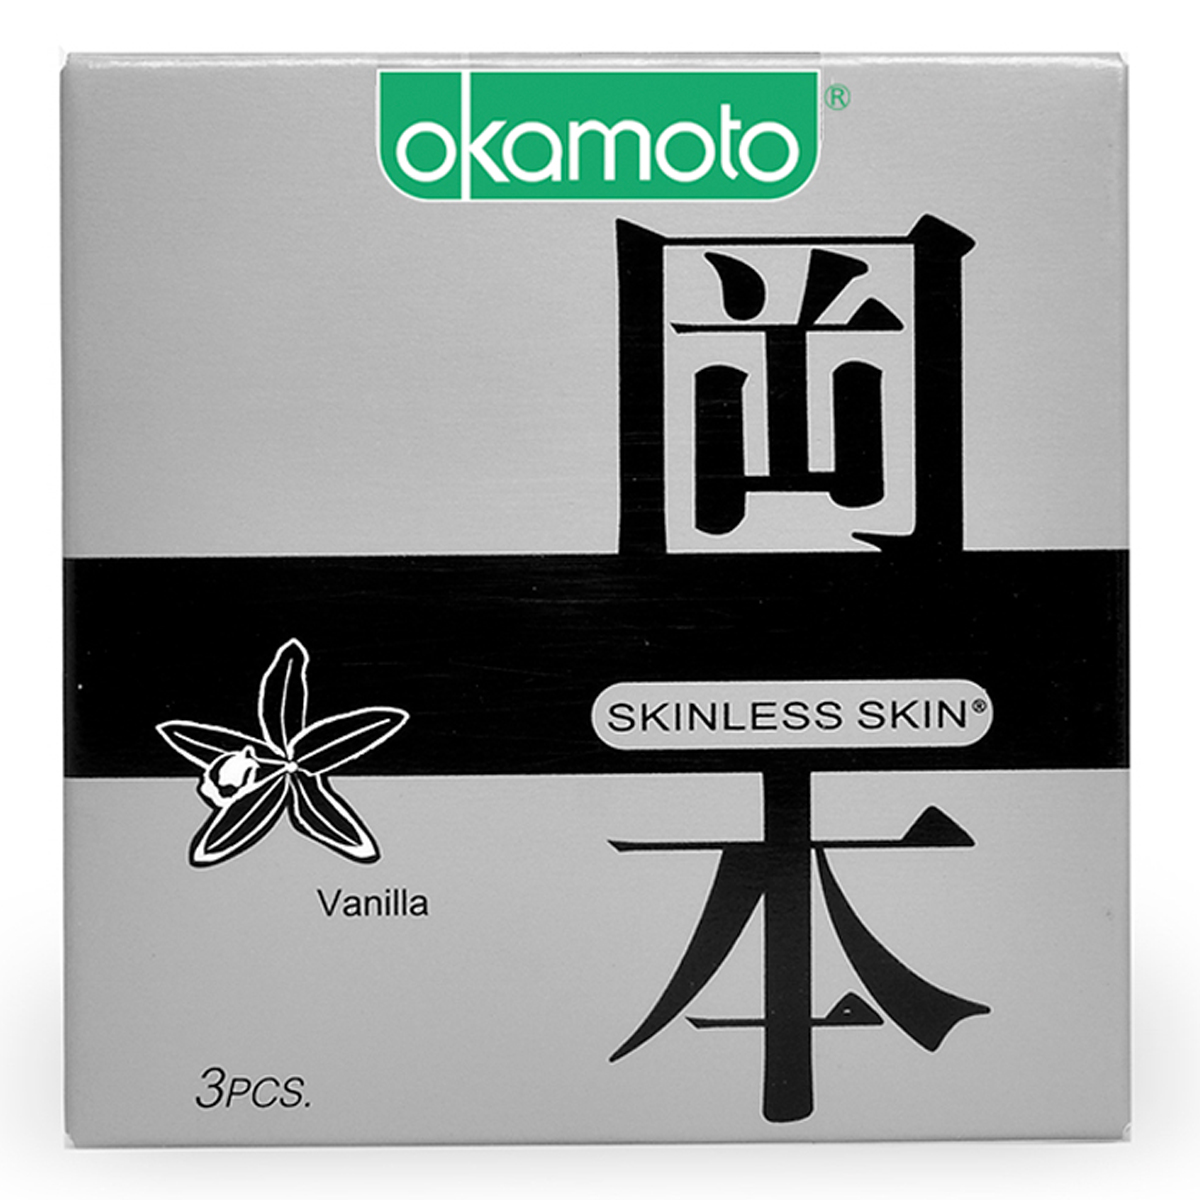 Bao cao su hương Vanilla, Sáng bóng mềm mại Okamoto Skinless Skin Vanilla-3's với thiết kế mỏng mới lạ, ấn tượng, dẻo dai, mang đến cảm giác chân thật cùng hương Vanilla quyến rũ. Đặc biệt, sản phẩm được sản xuất hoàn toàn bằng cao su thiên nhiên cao cấp cũng như đáp ứng các yêu cầu và điều kiện sản xuất nghiêm ngặt, đảm bảo an toàn tối đa cho người sử dụng.